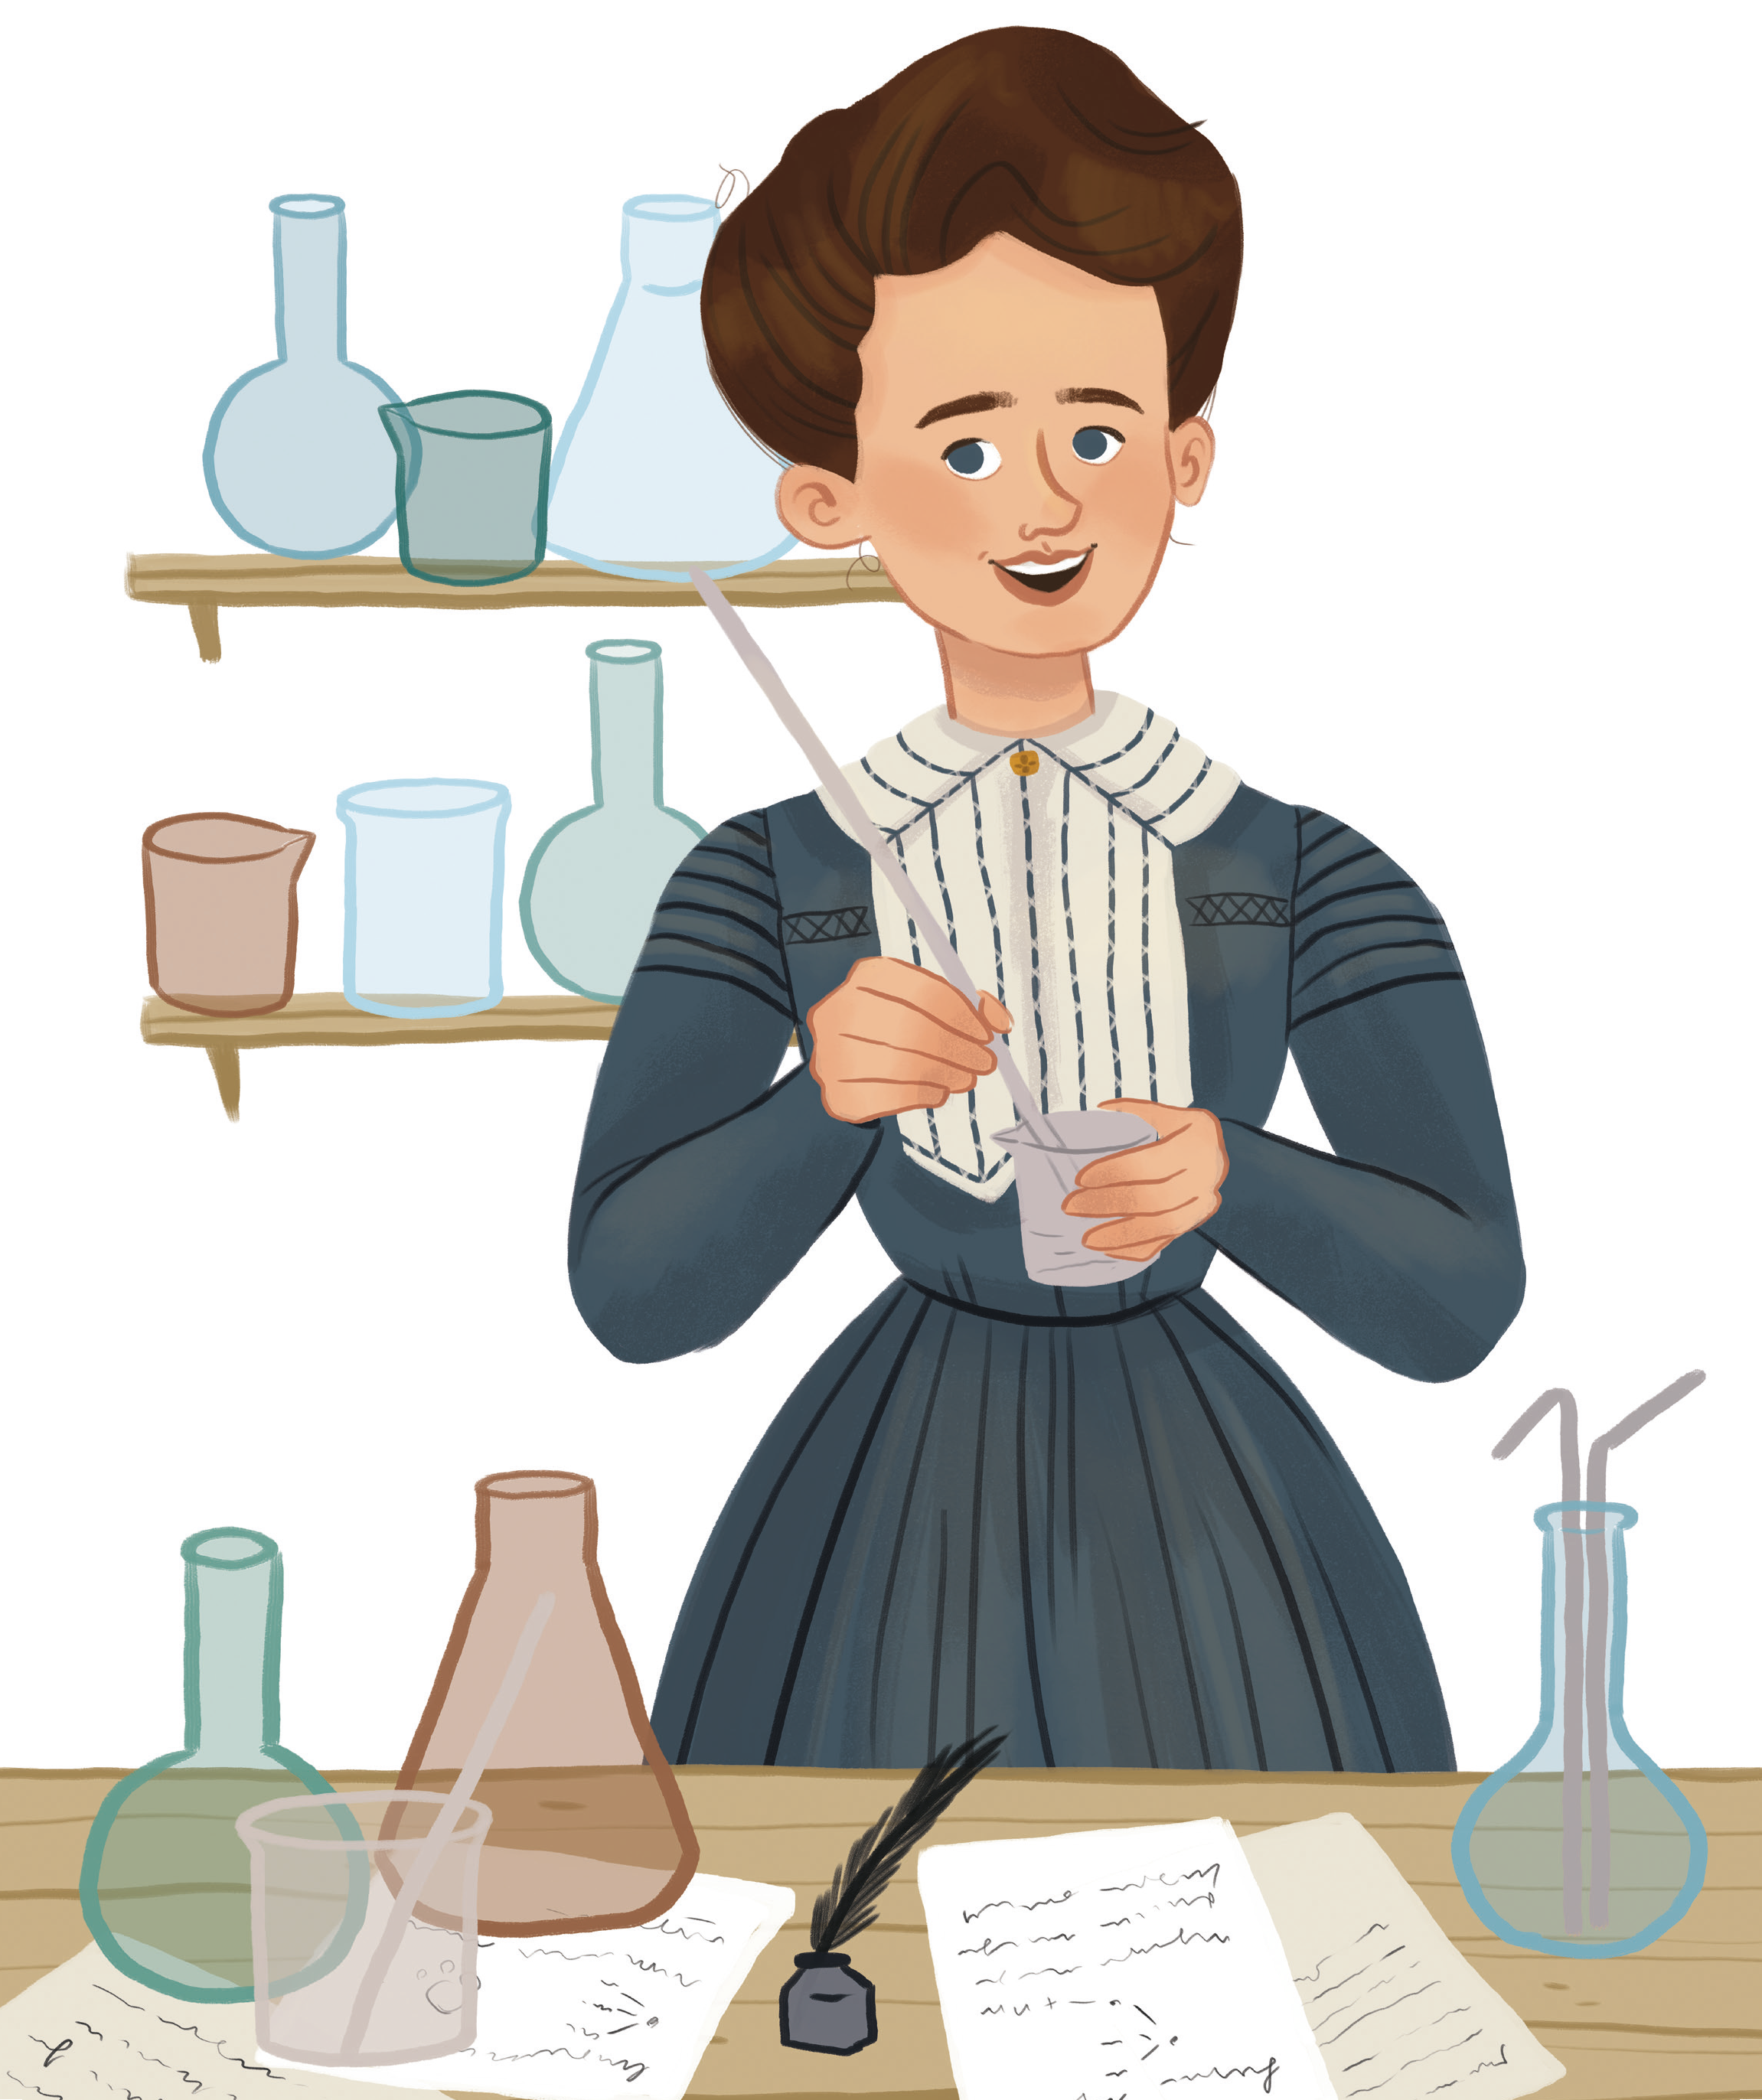 Il·lustració del llibre Marie Curie per reivindicar el paper de la dona en la ciència